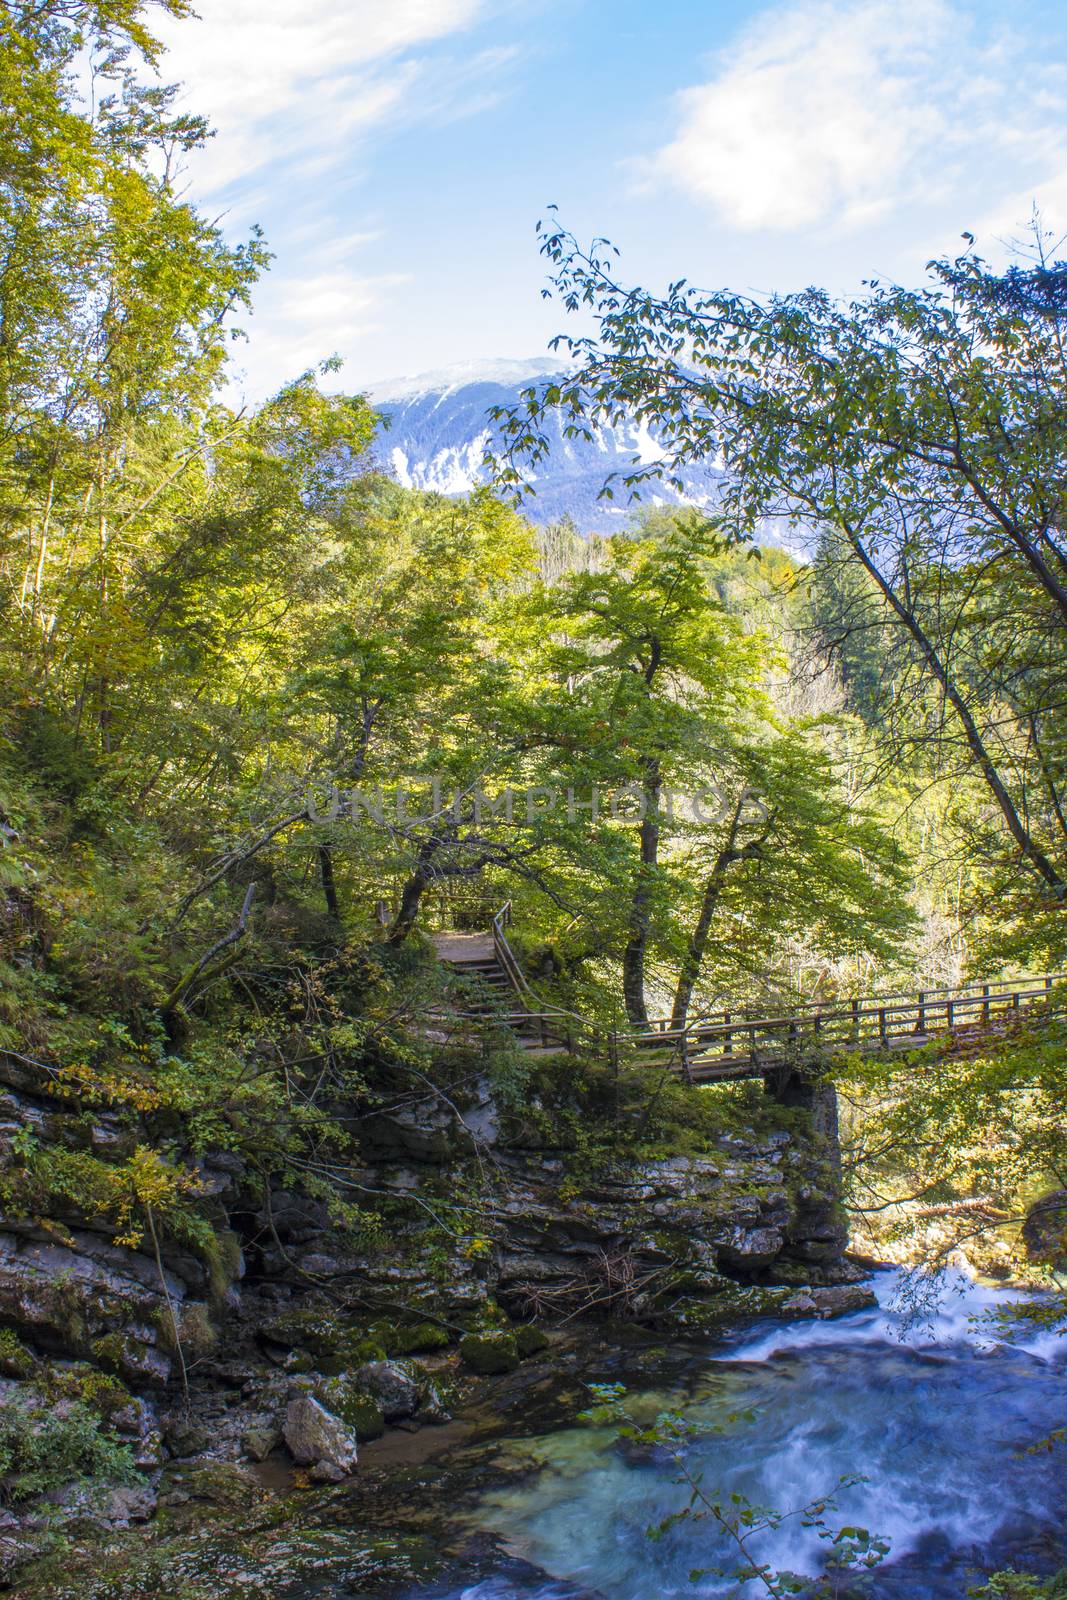 Vintgar gorge, Slovenia by miradrozdowski